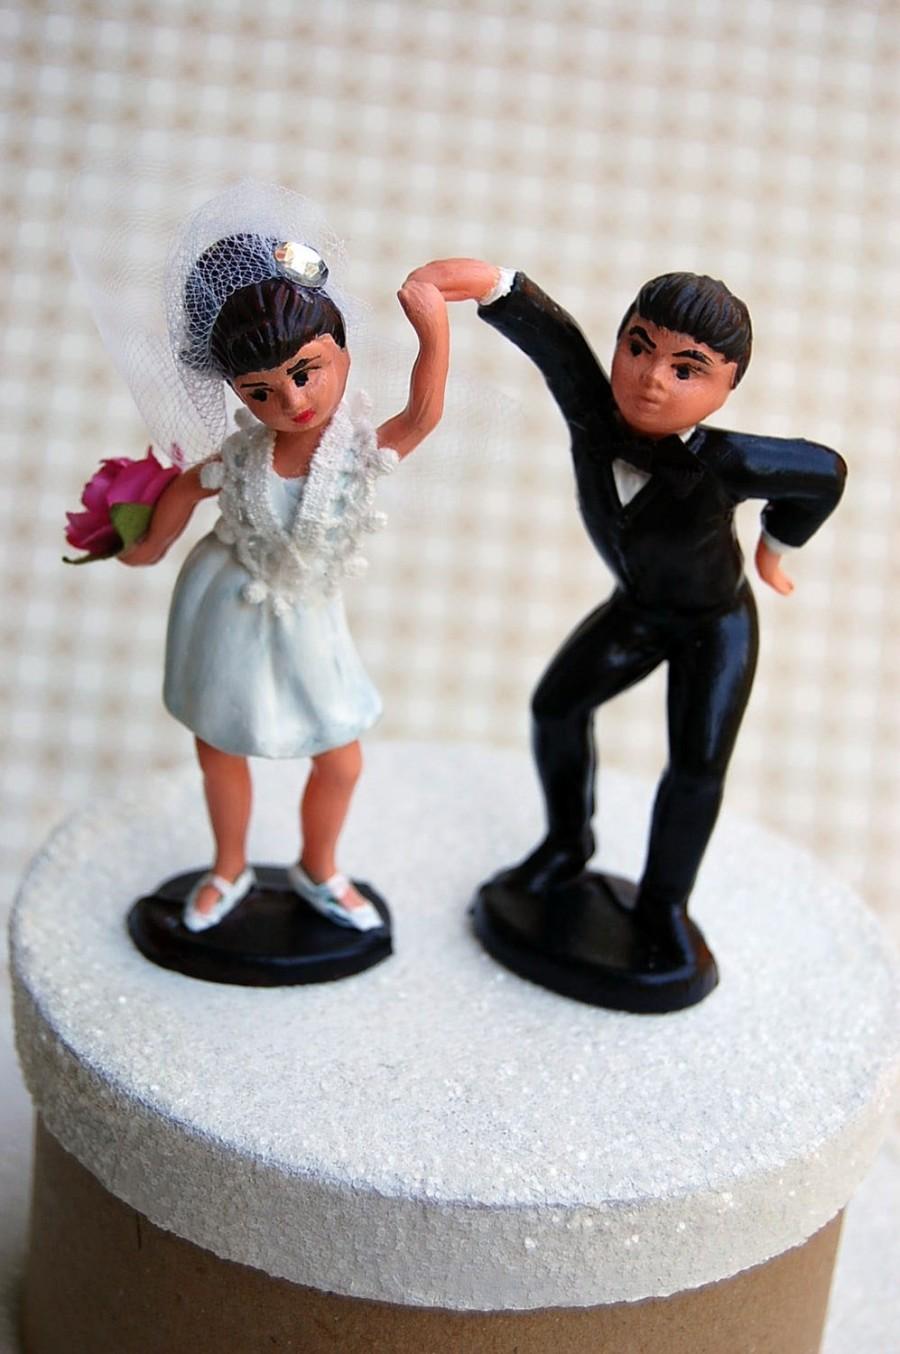 Wedding - Boogie Woogie Bride & Groom Wedding Cake Topper: Vintage Refurbished Love Bird Cake Topper -- LoveNesting Cake Toppers